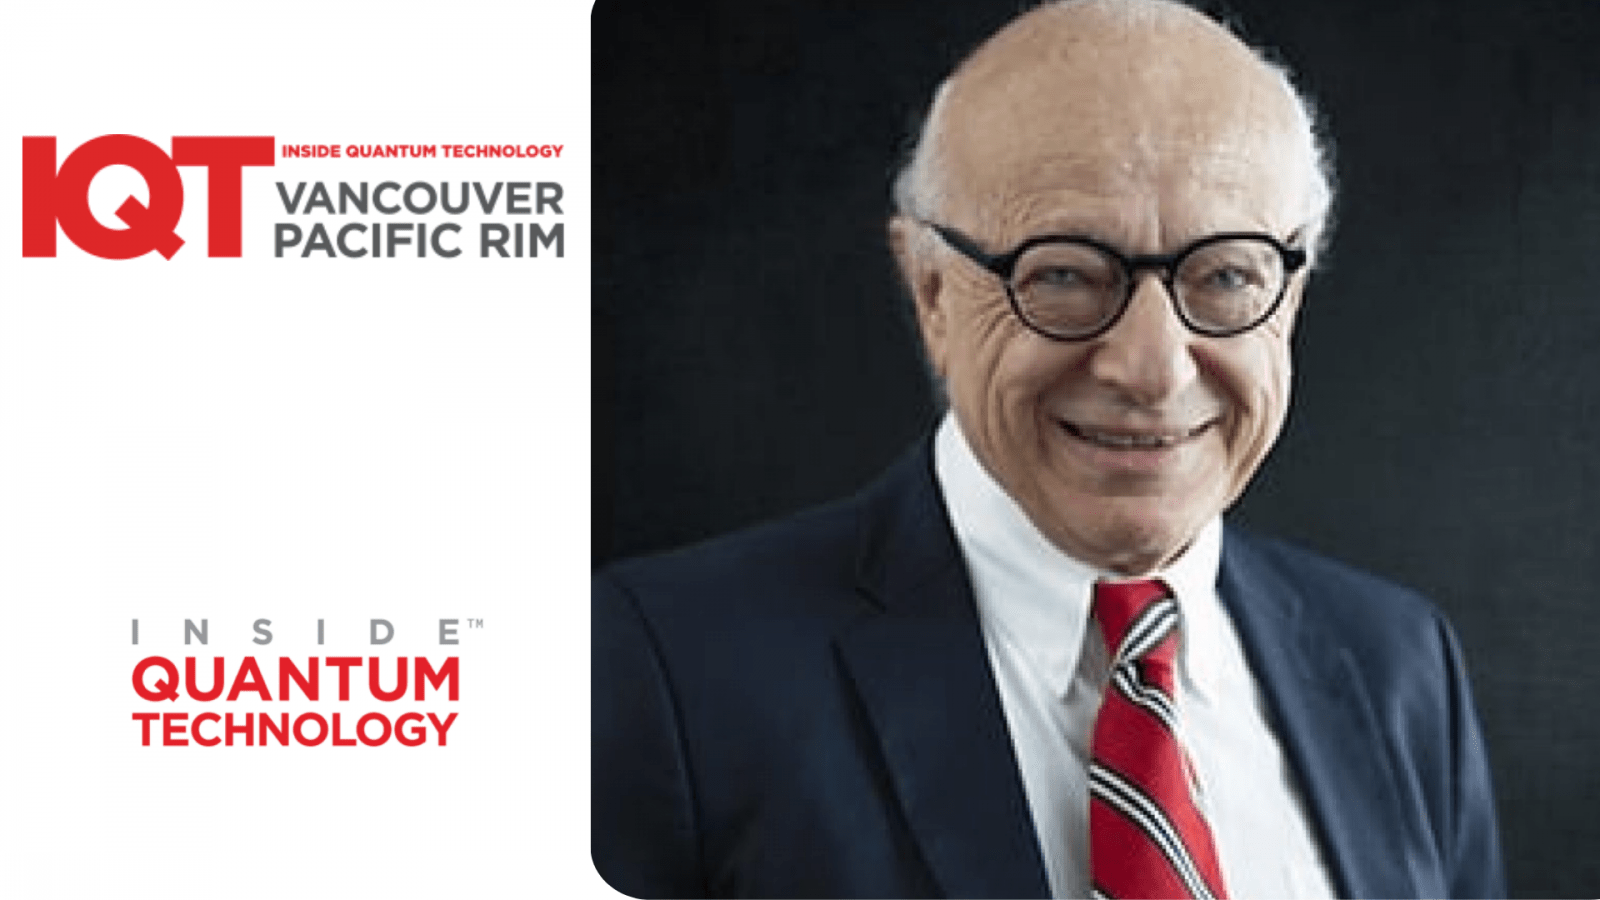 Aktualizacja IQT Vancouver/Pacific Rim: Lawrence Gasman, współzałożyciel Inside Quantum Technology (IQT), jest mówcą na rok 2024 - Inside Quantum Technology